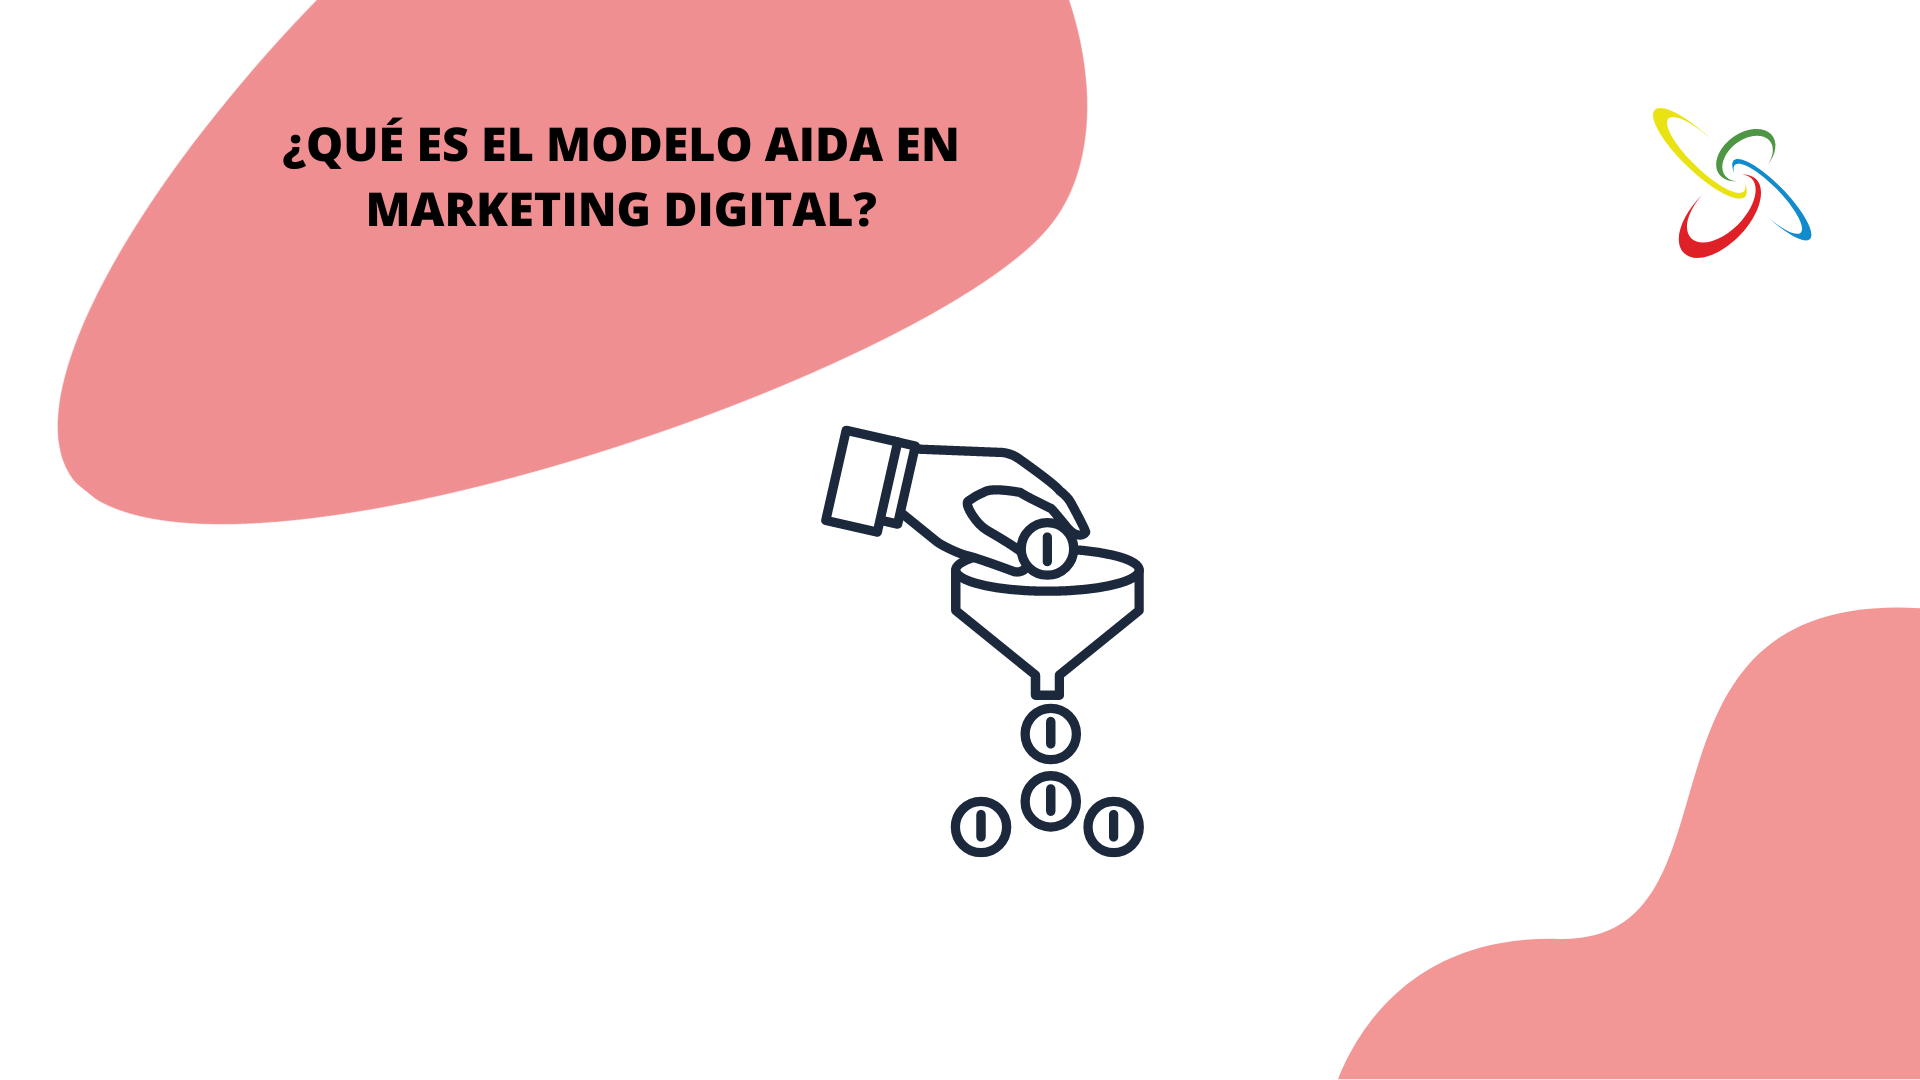 ¿Qué es el modelo AIDA en marketing digital?